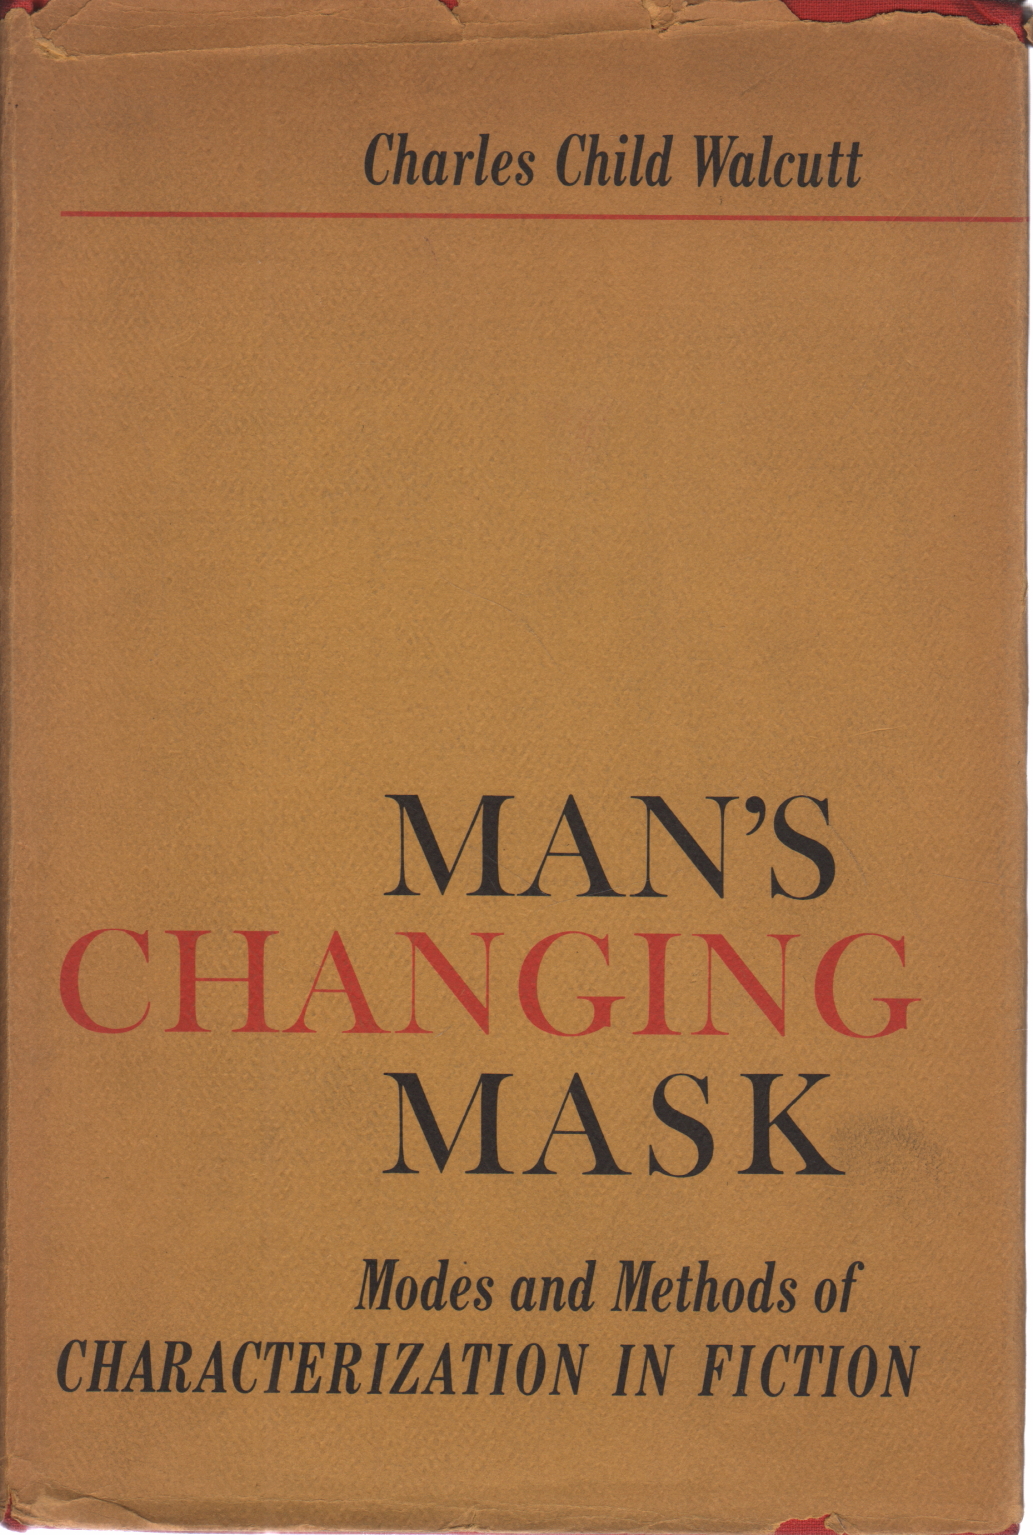 Man's changing mask, Charles Child Walcutt